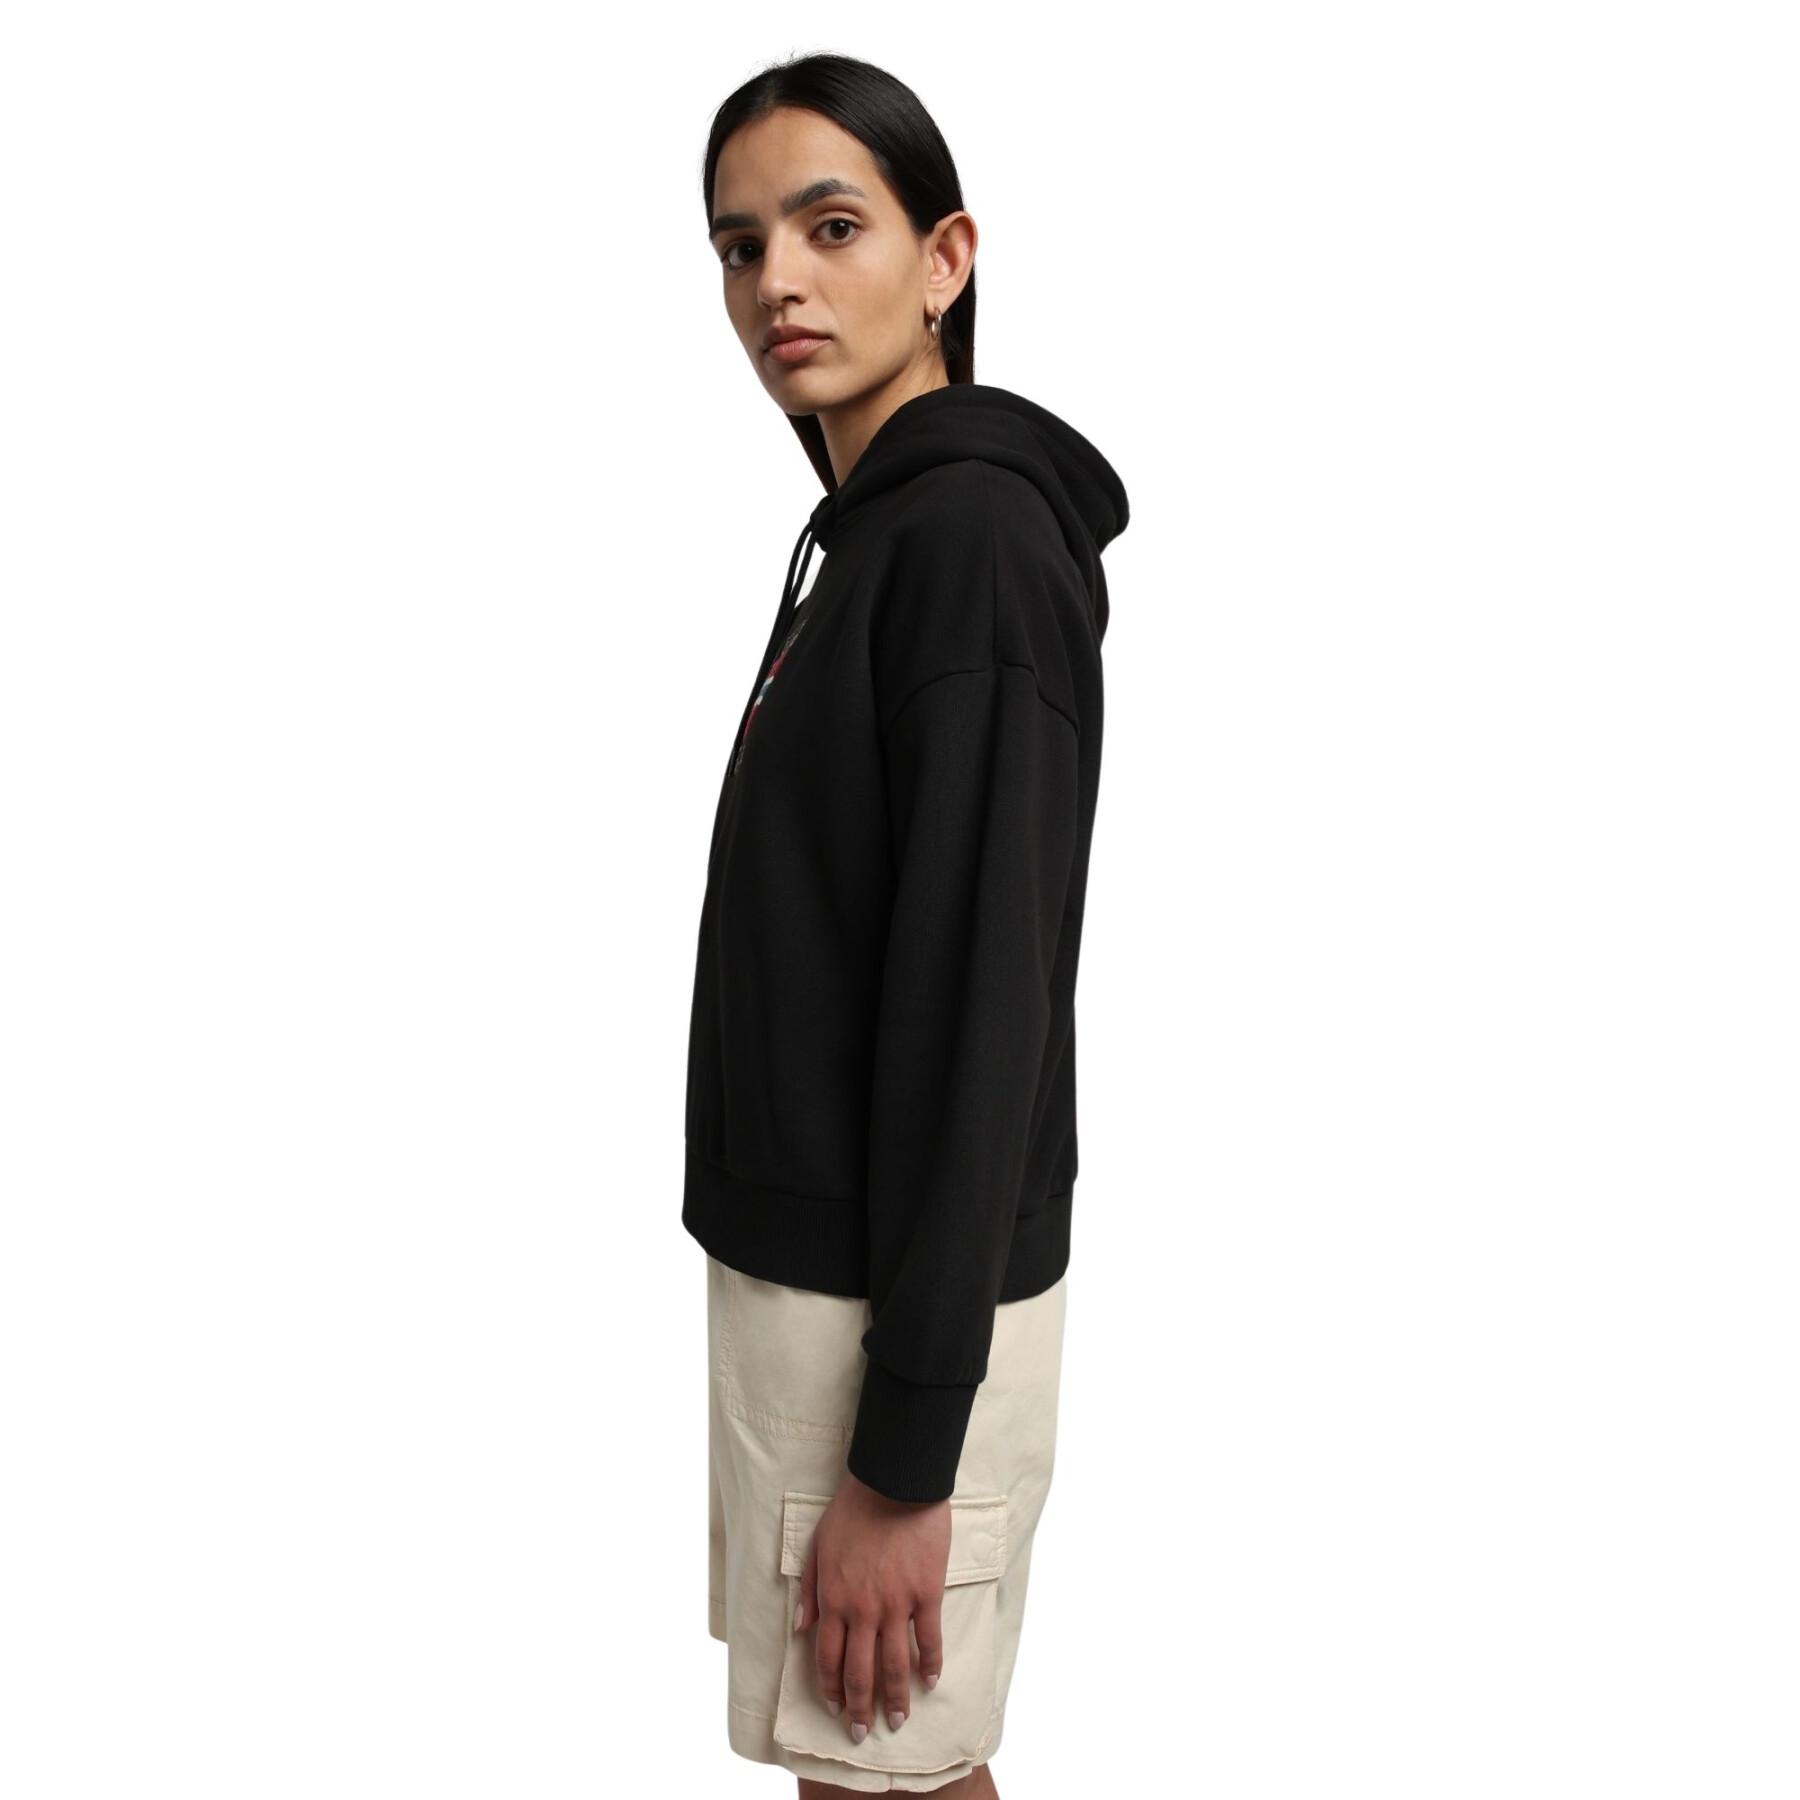 Women's hooded sweatshirt Napapijri B-Verres